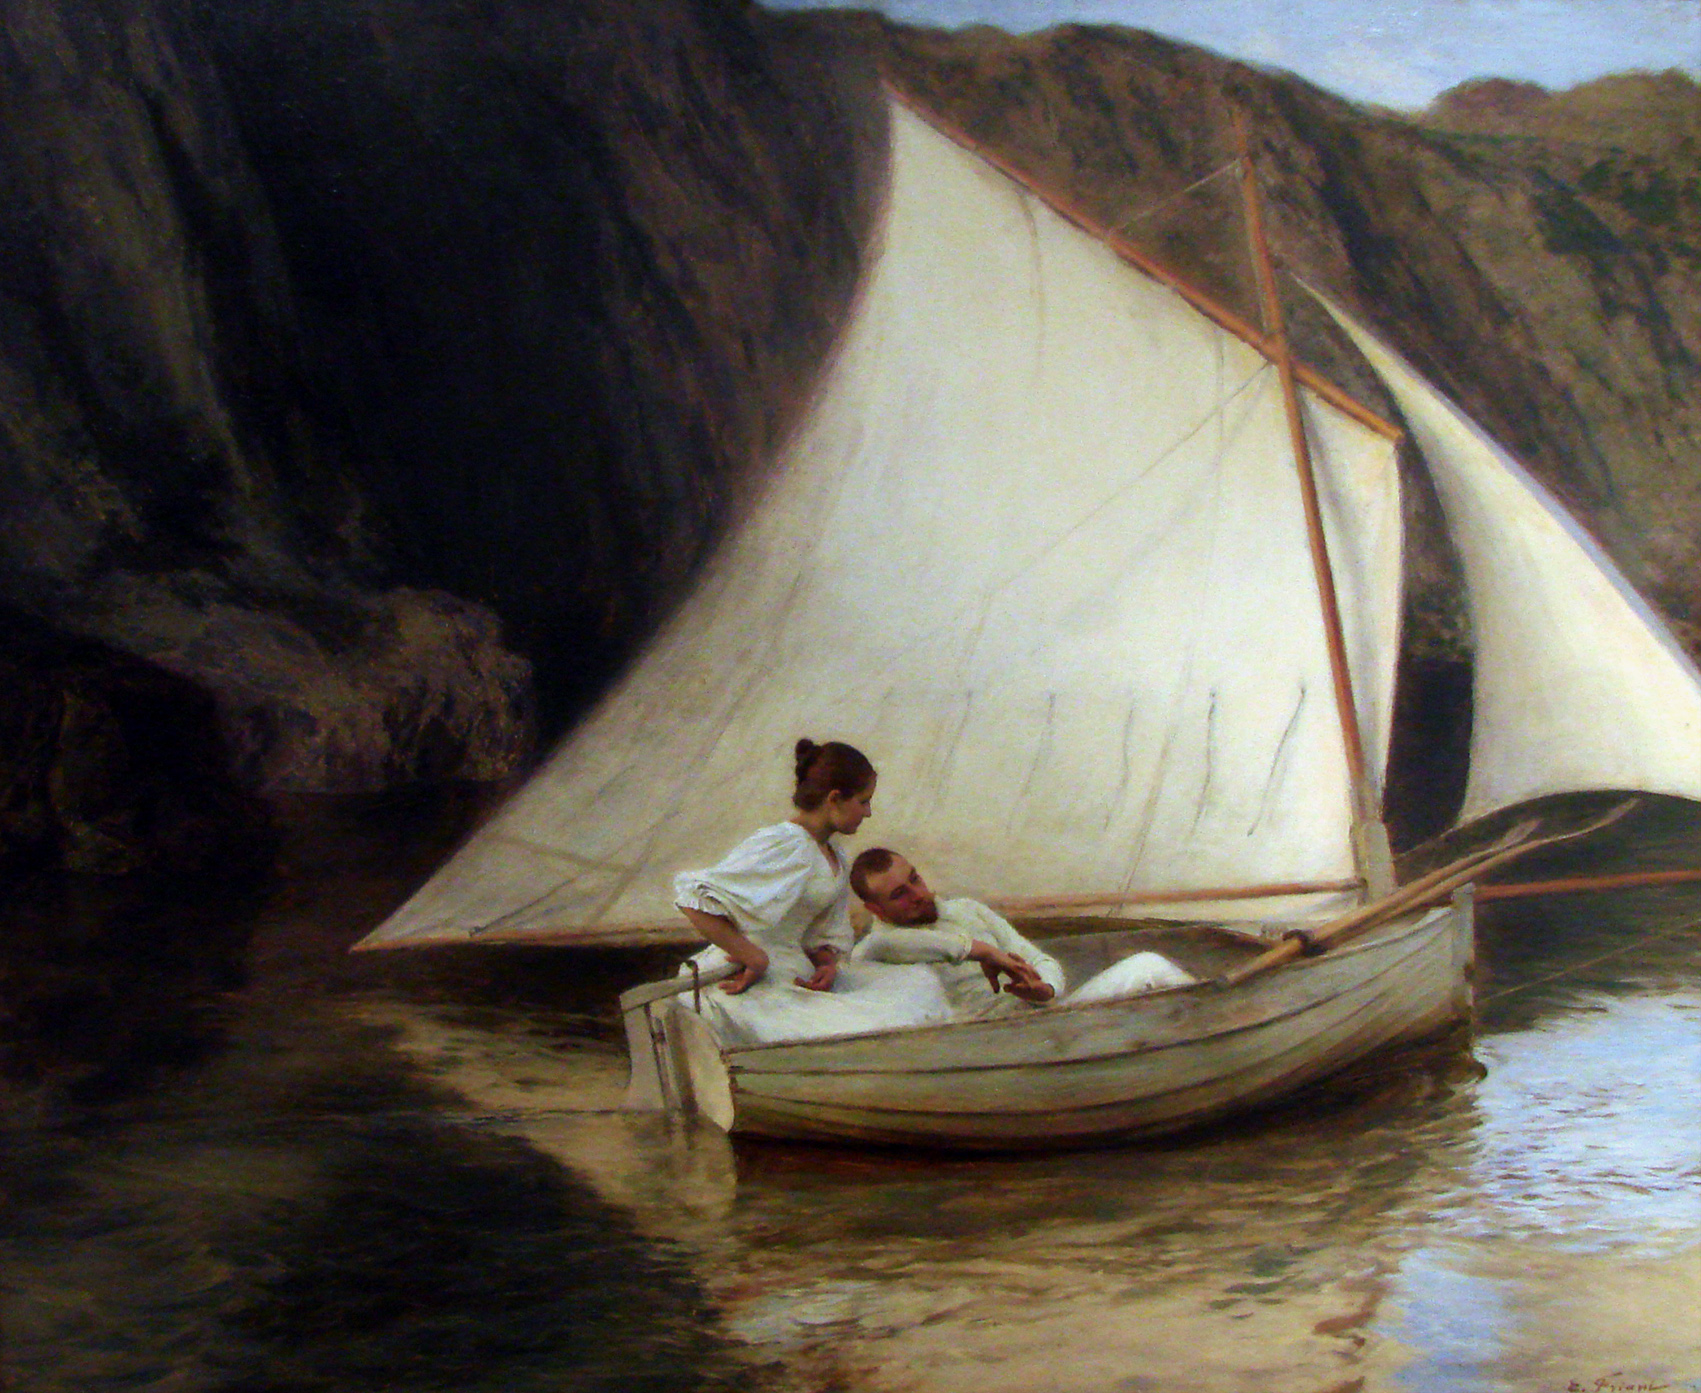 小船 by 埃米尔 弗朗特 - 1895 